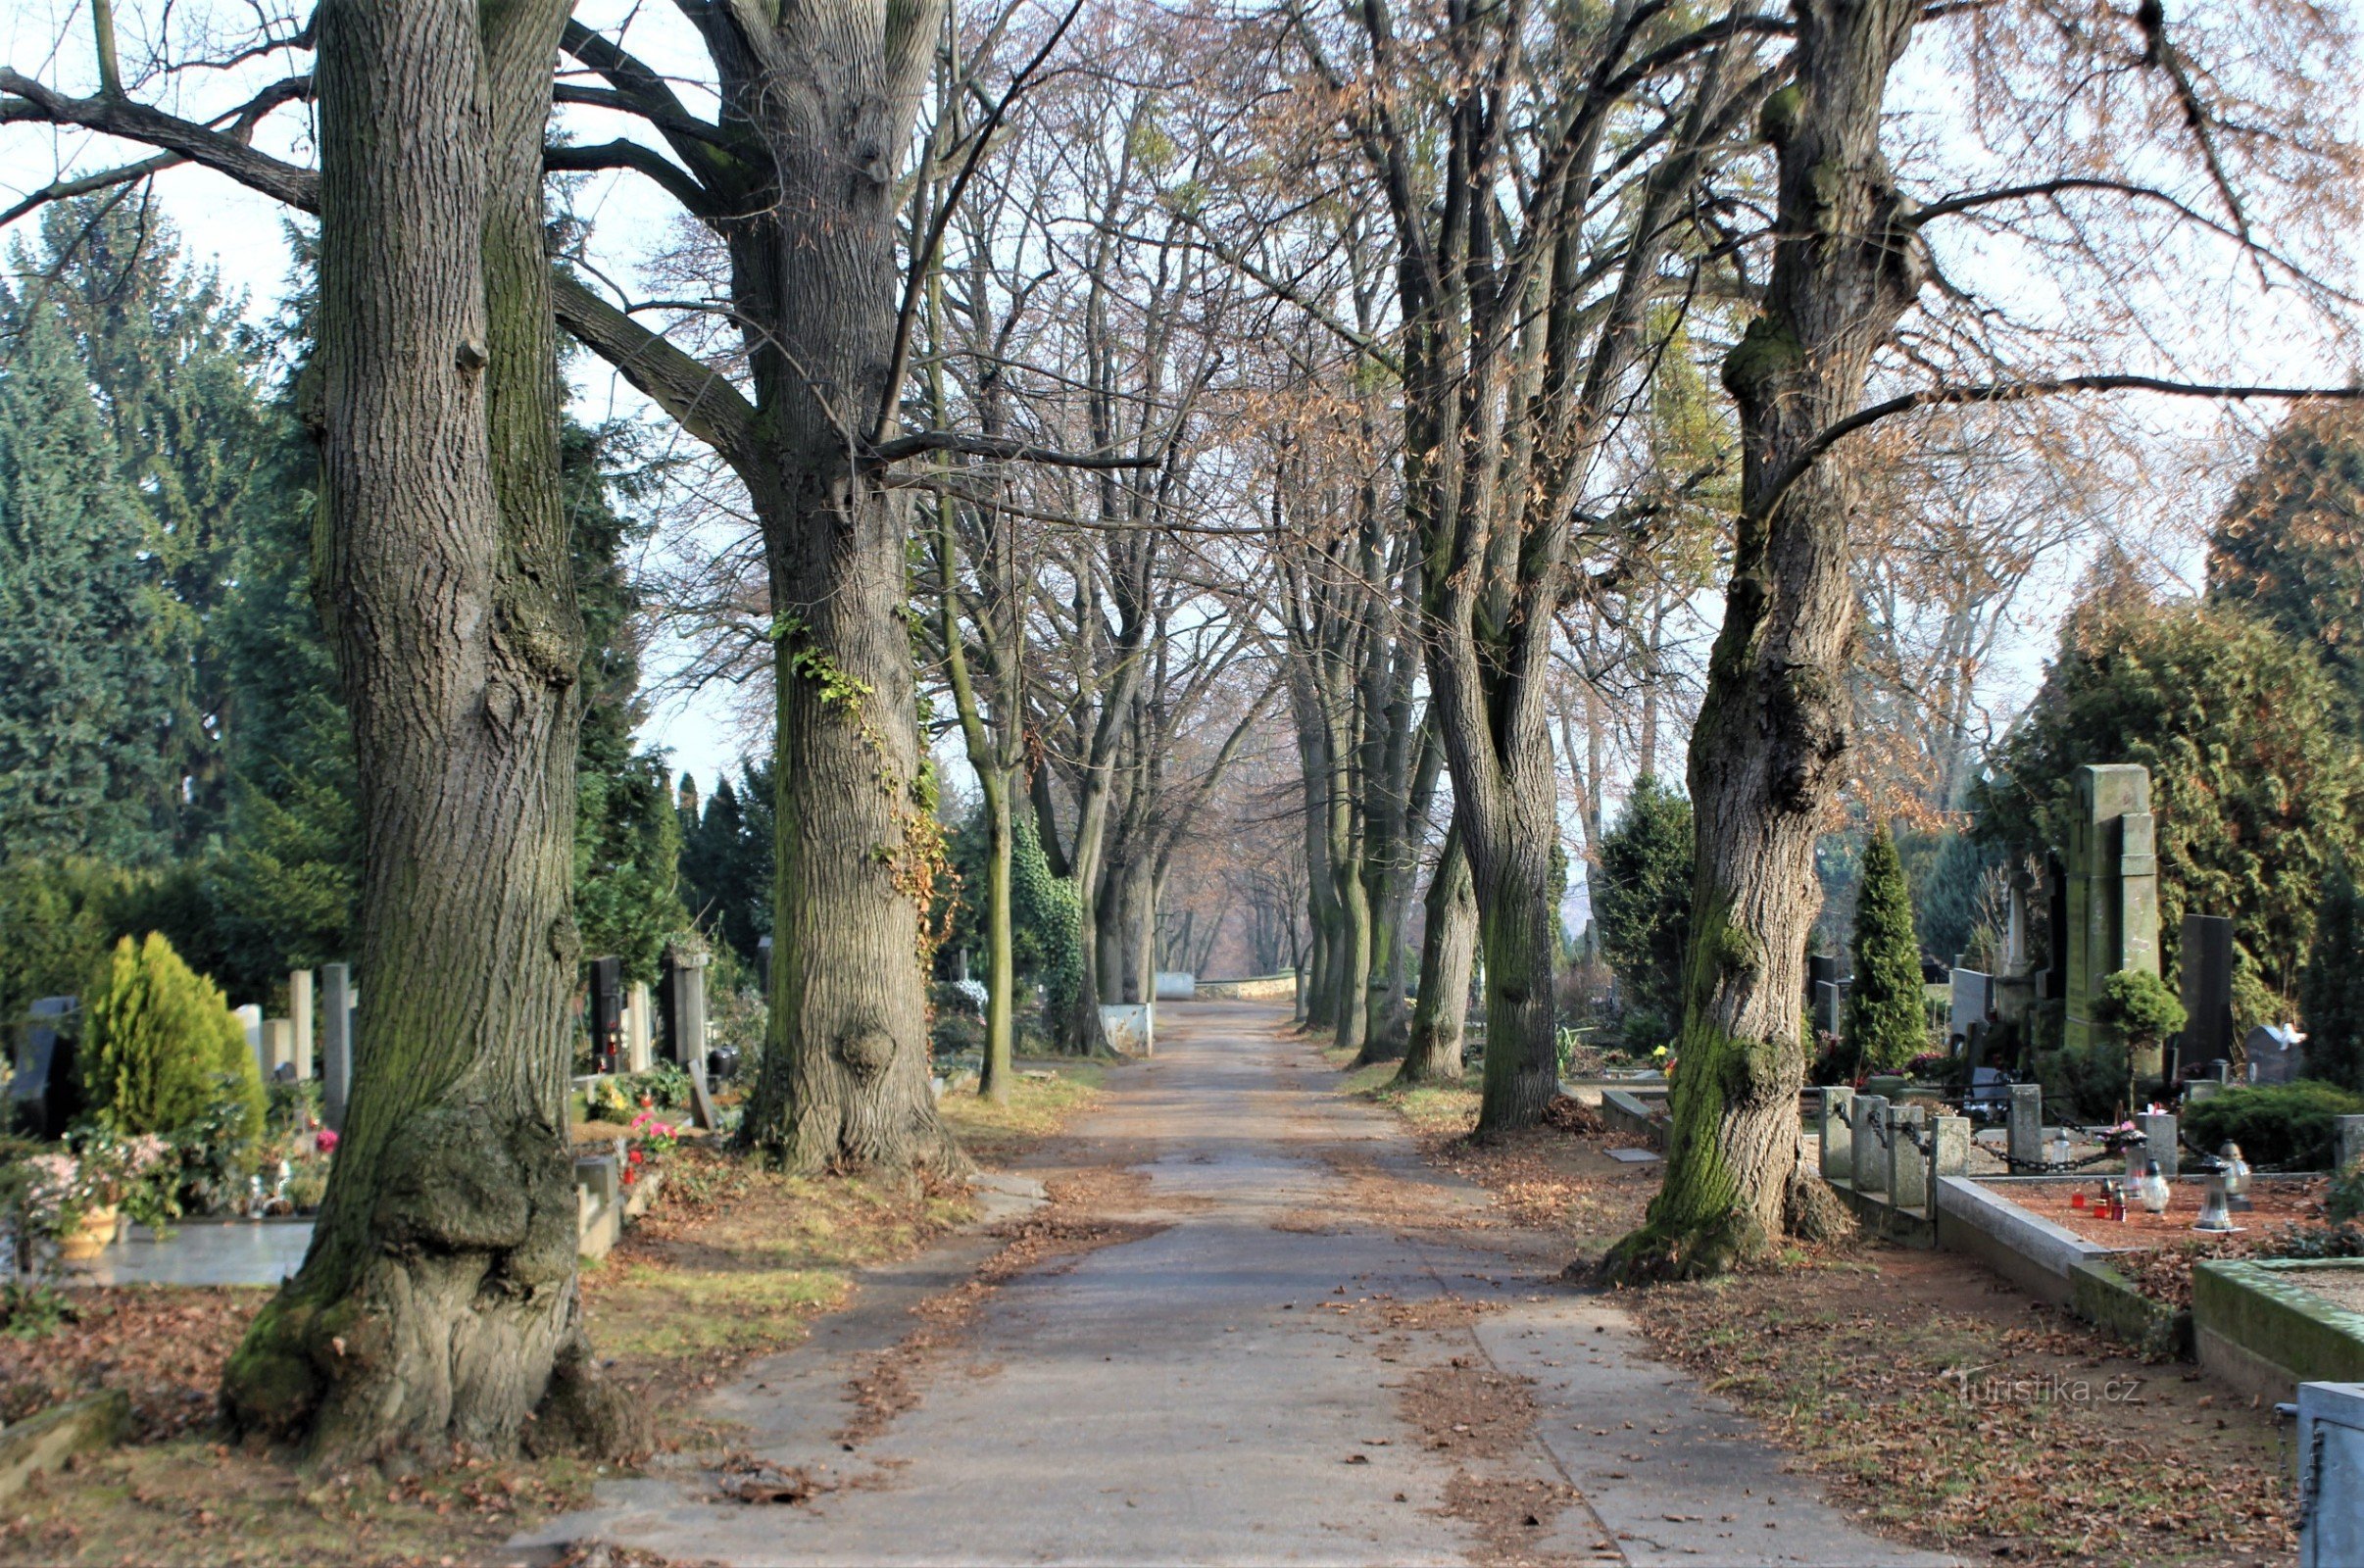 Hřbitov je protkán sítí alejí se vzrostlou zelení